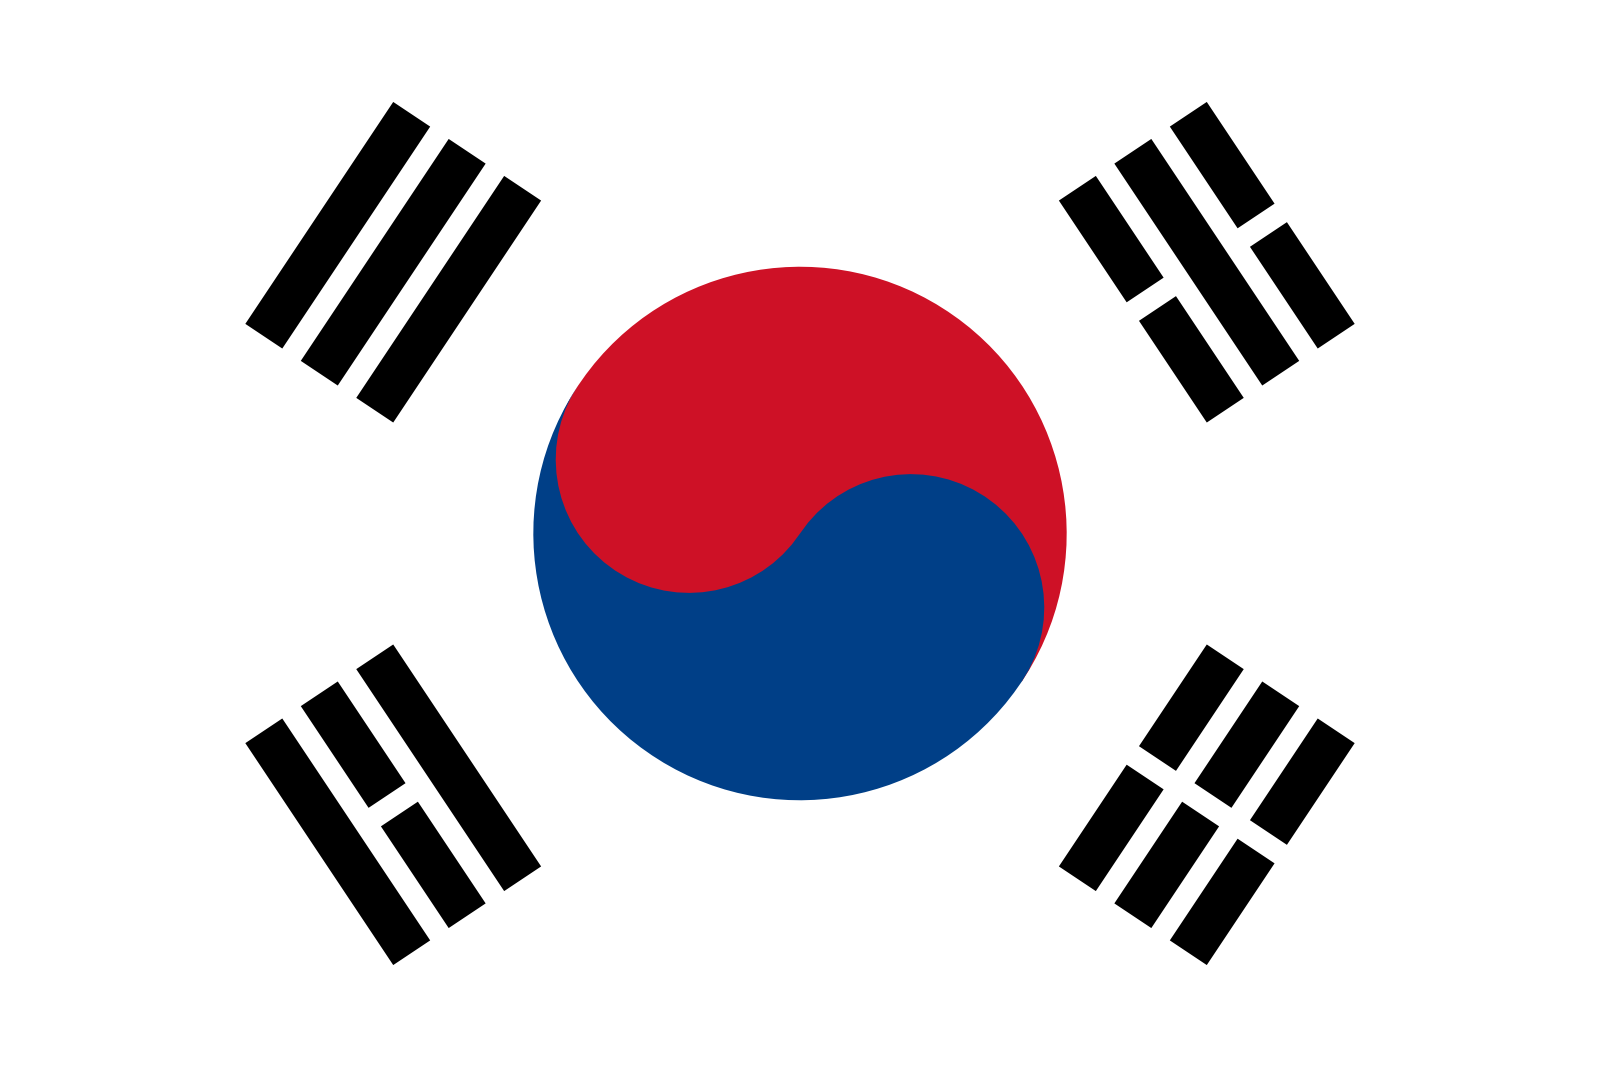 south korea country flag